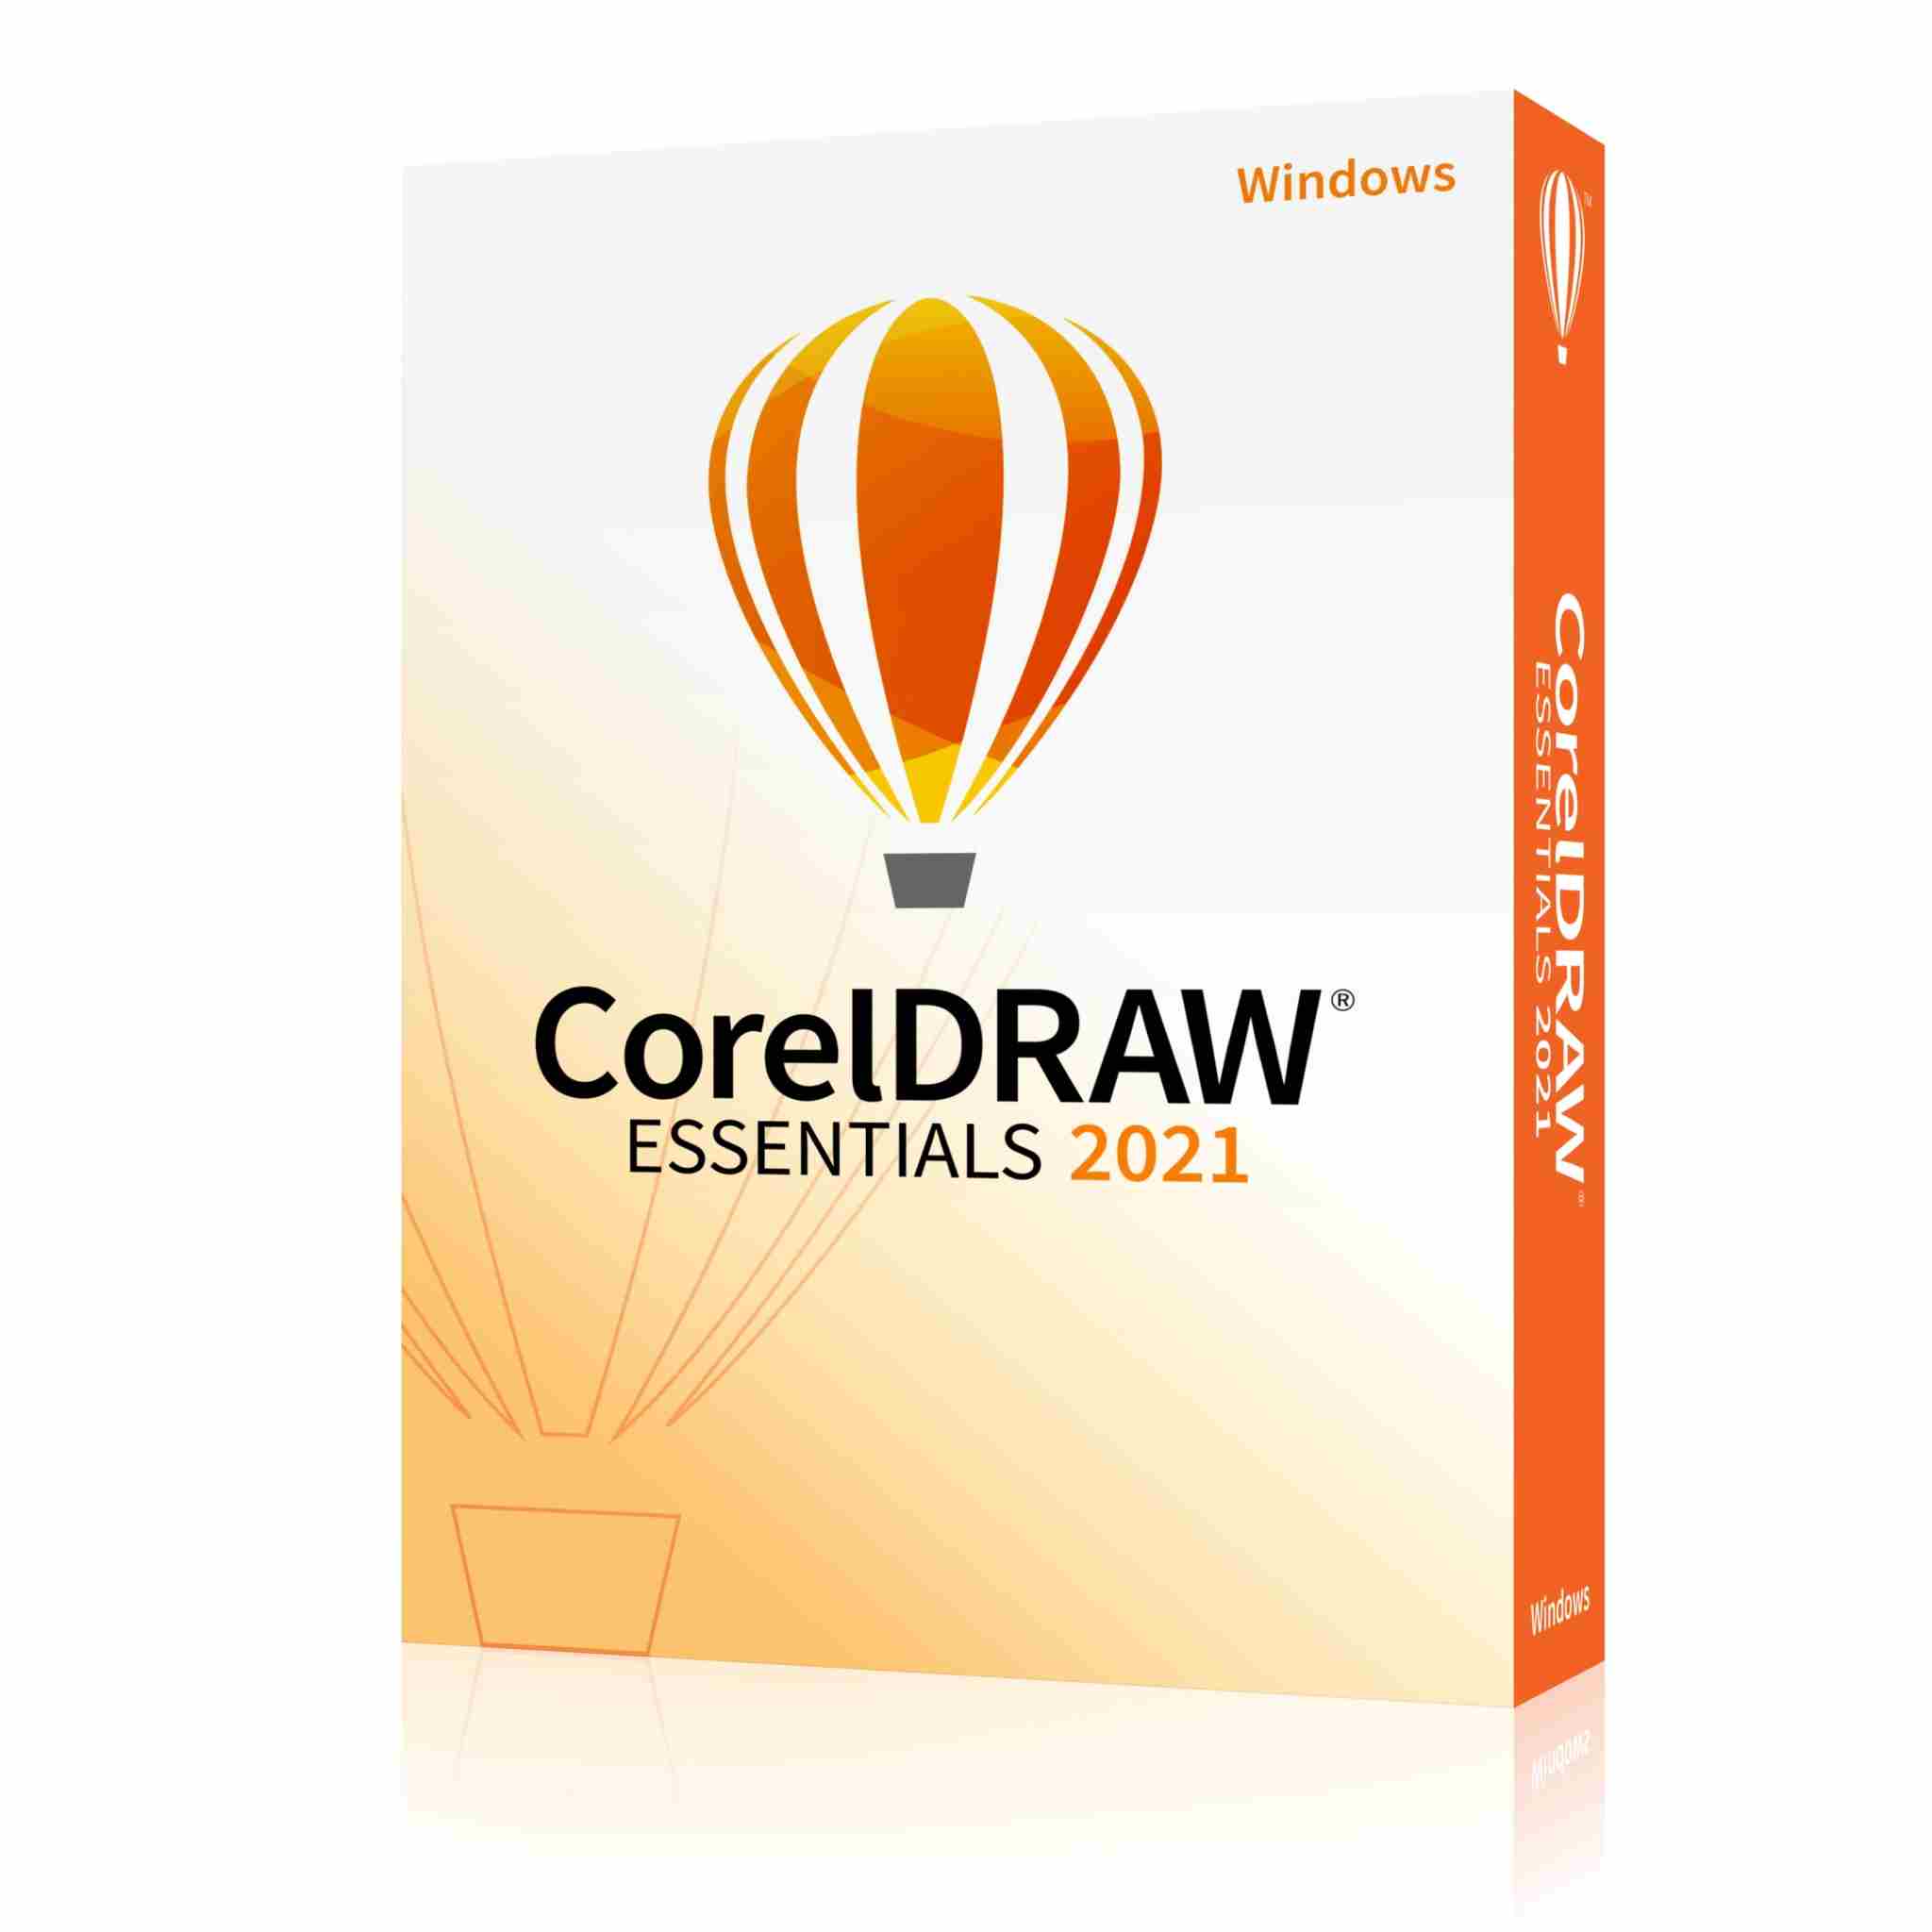 coreldraw essentials